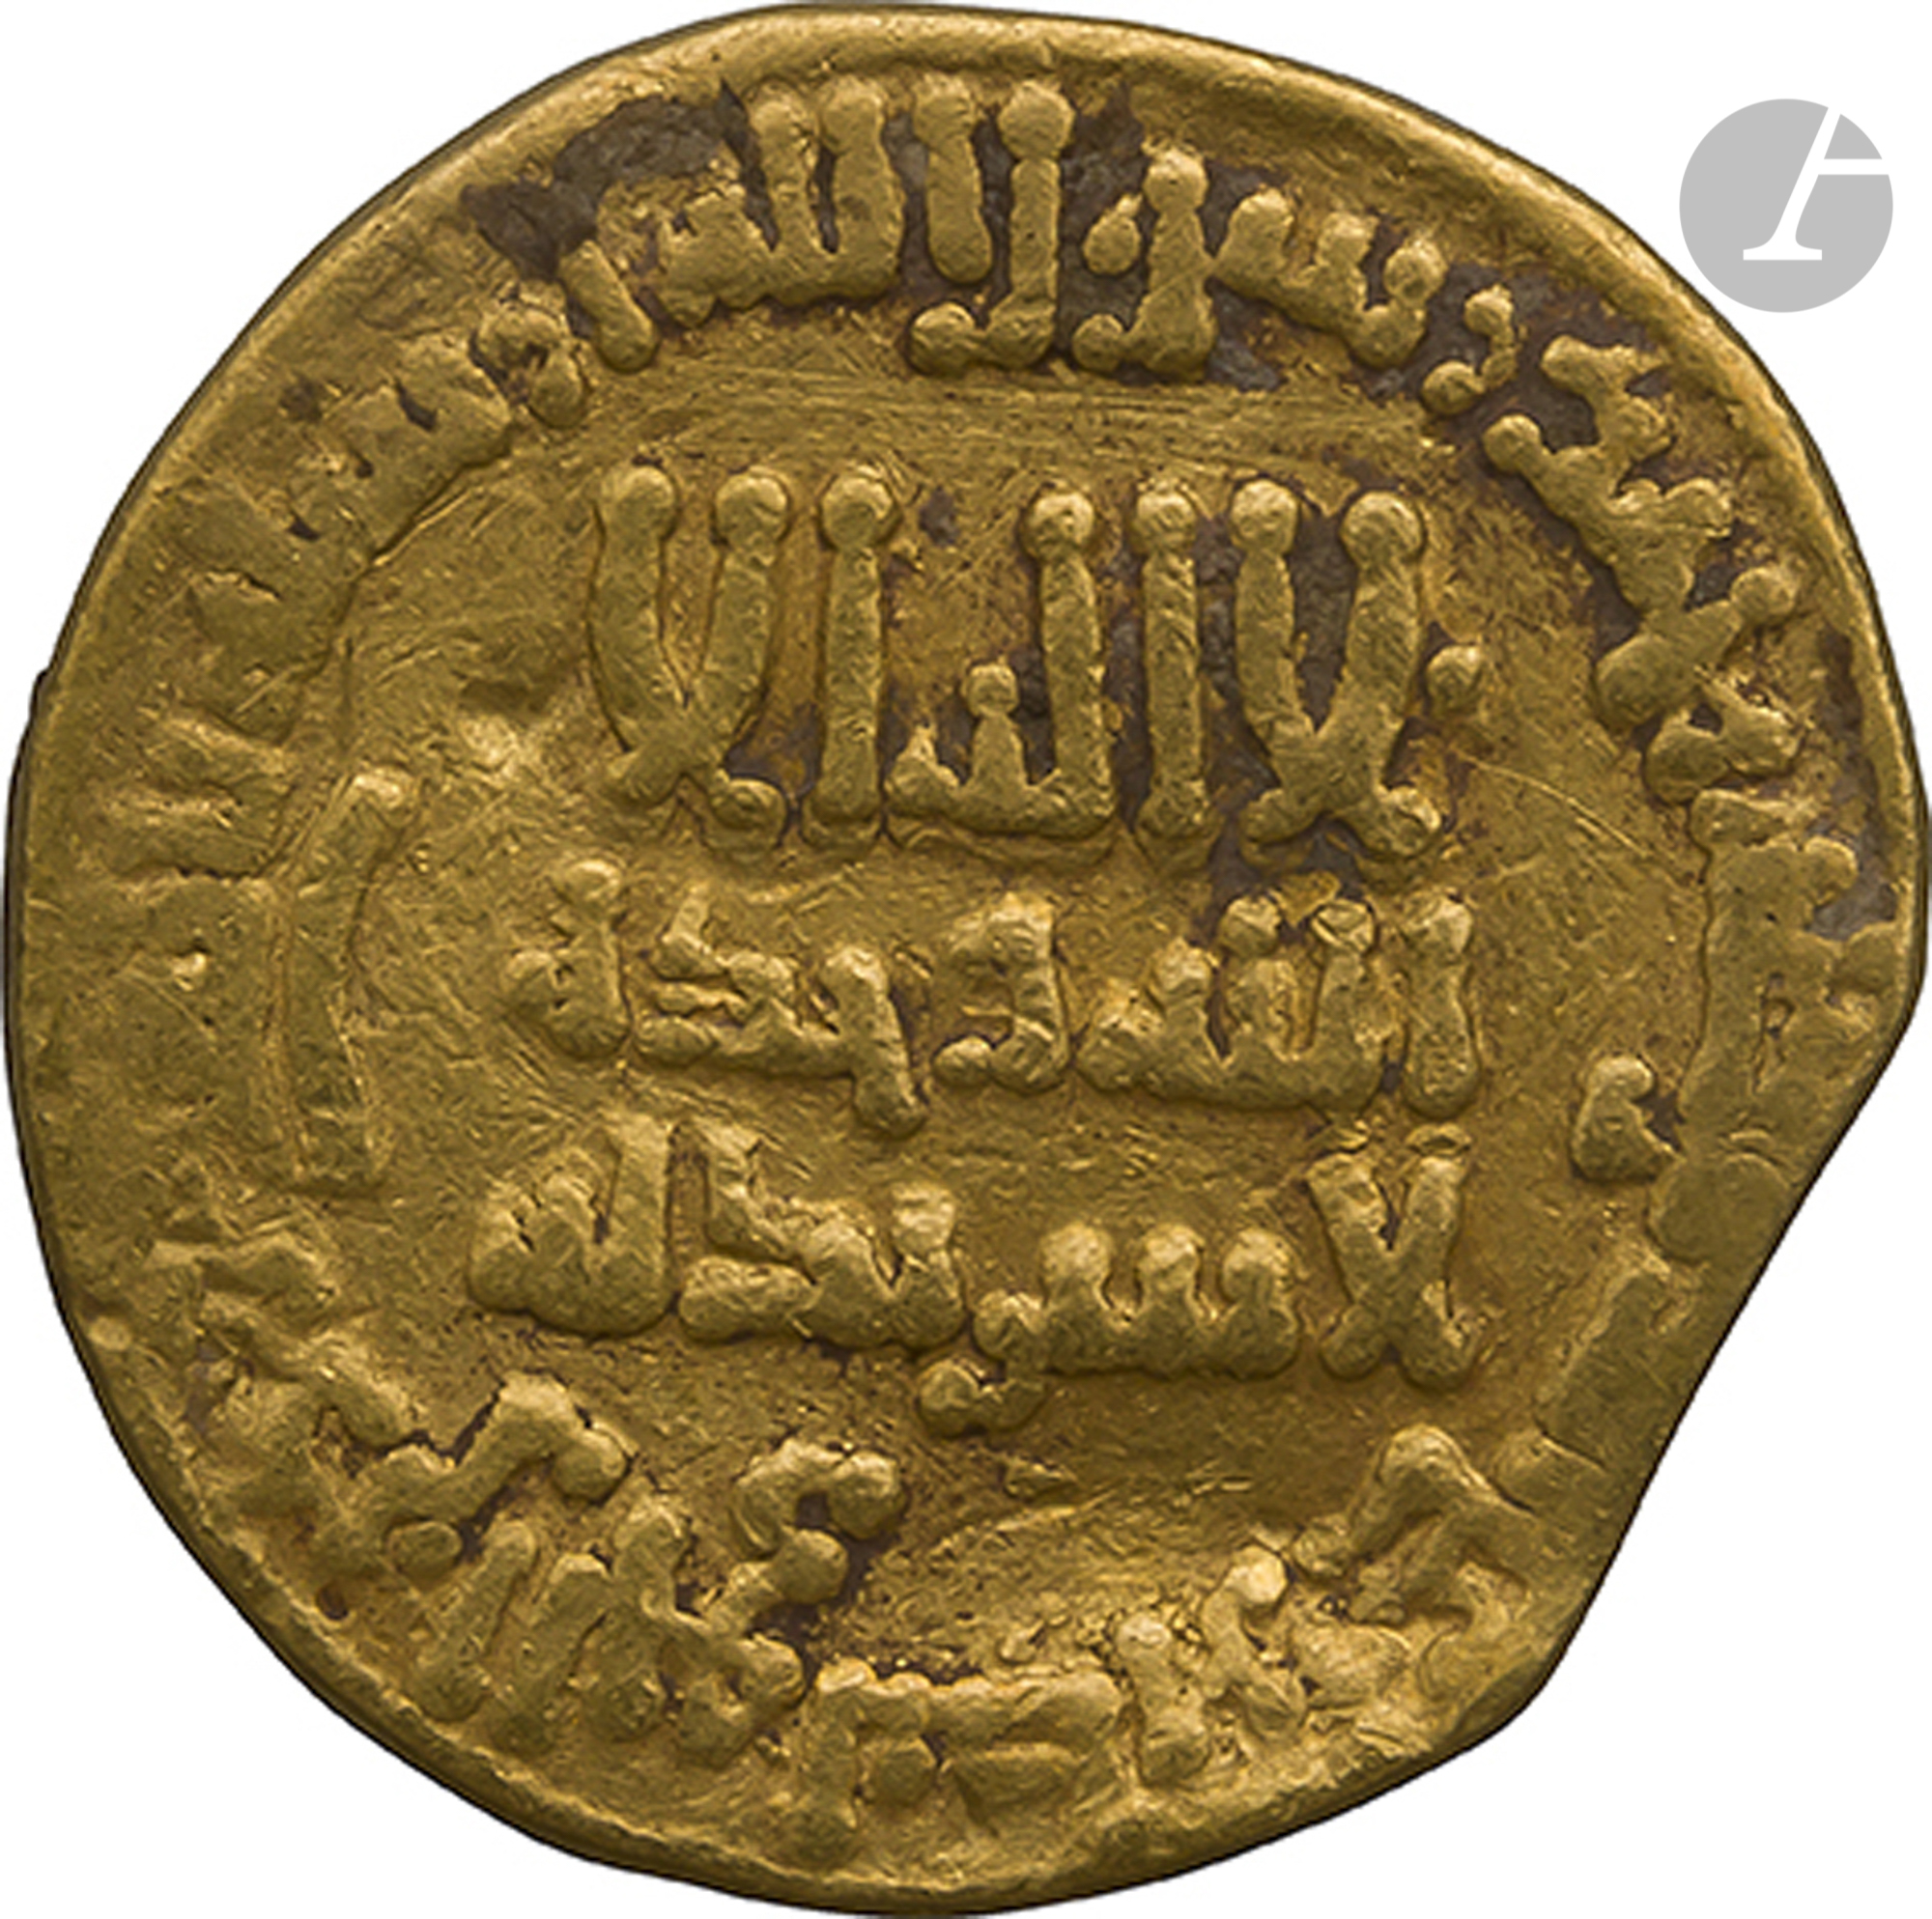 ABBASSIDES Dinar d'or daté 183 H / 799, au nom de Ja'far, gouverneur d'Égypte, Règne de Harûn al-